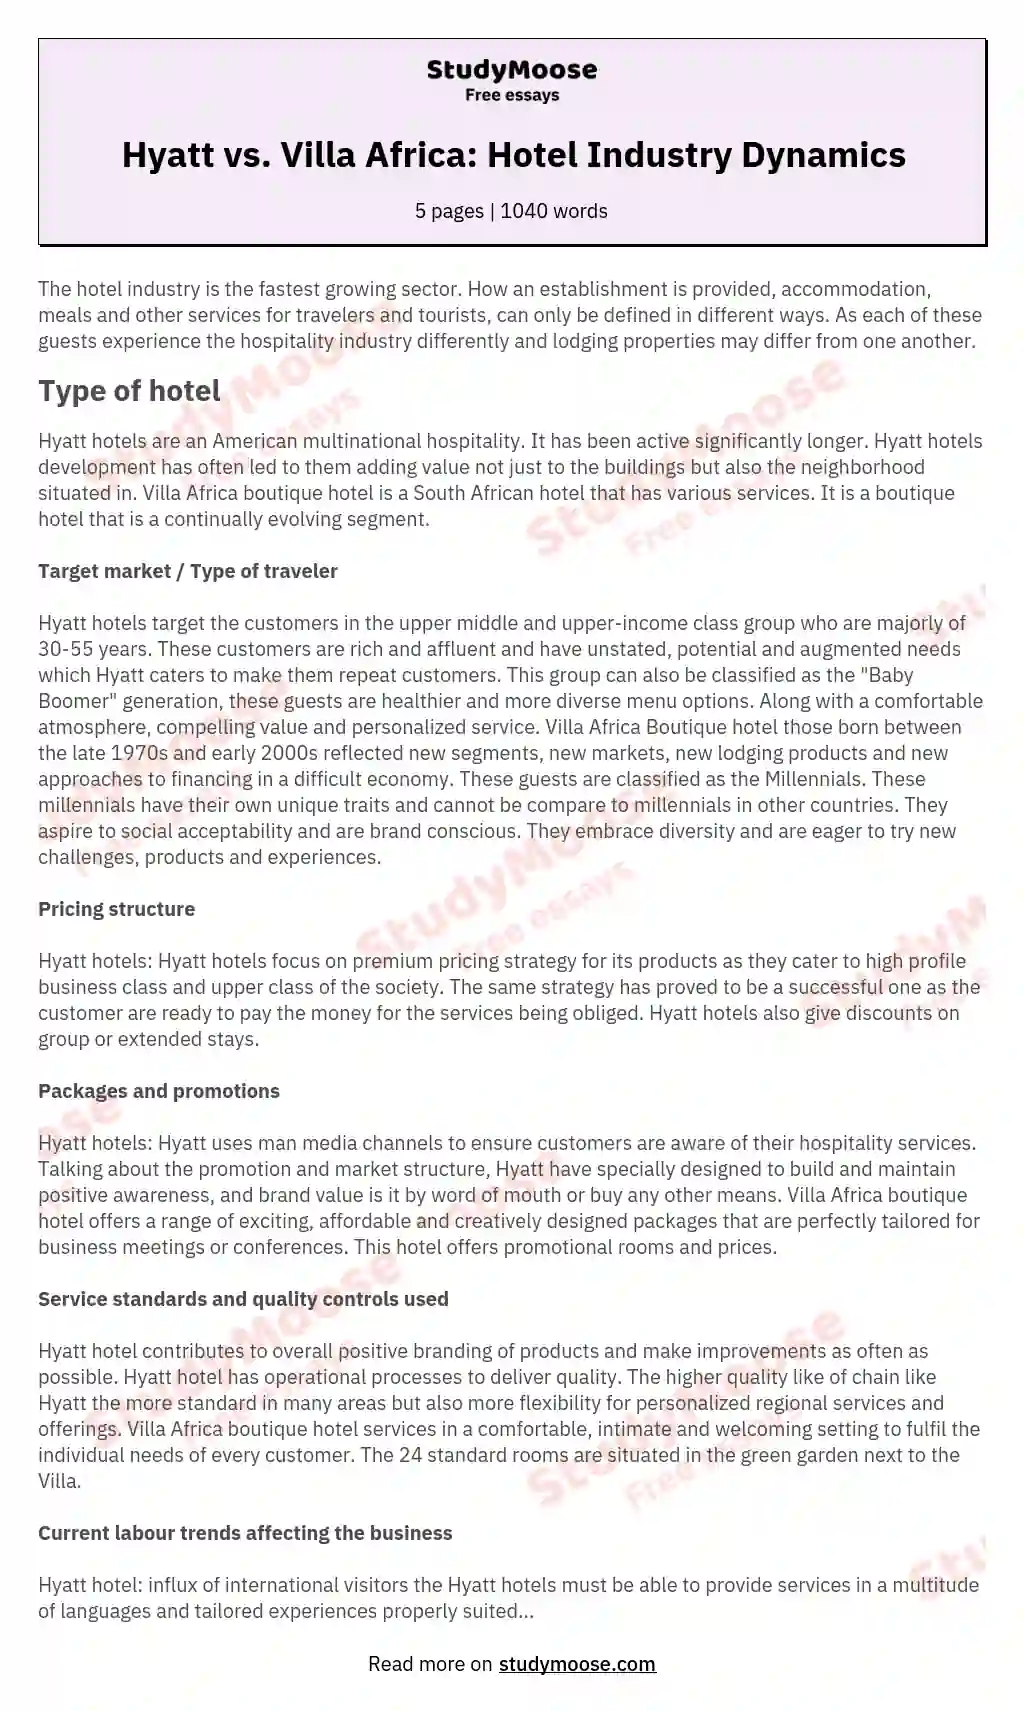 Hyatt vs. Villa Africa: Hotel Industry Dynamics essay